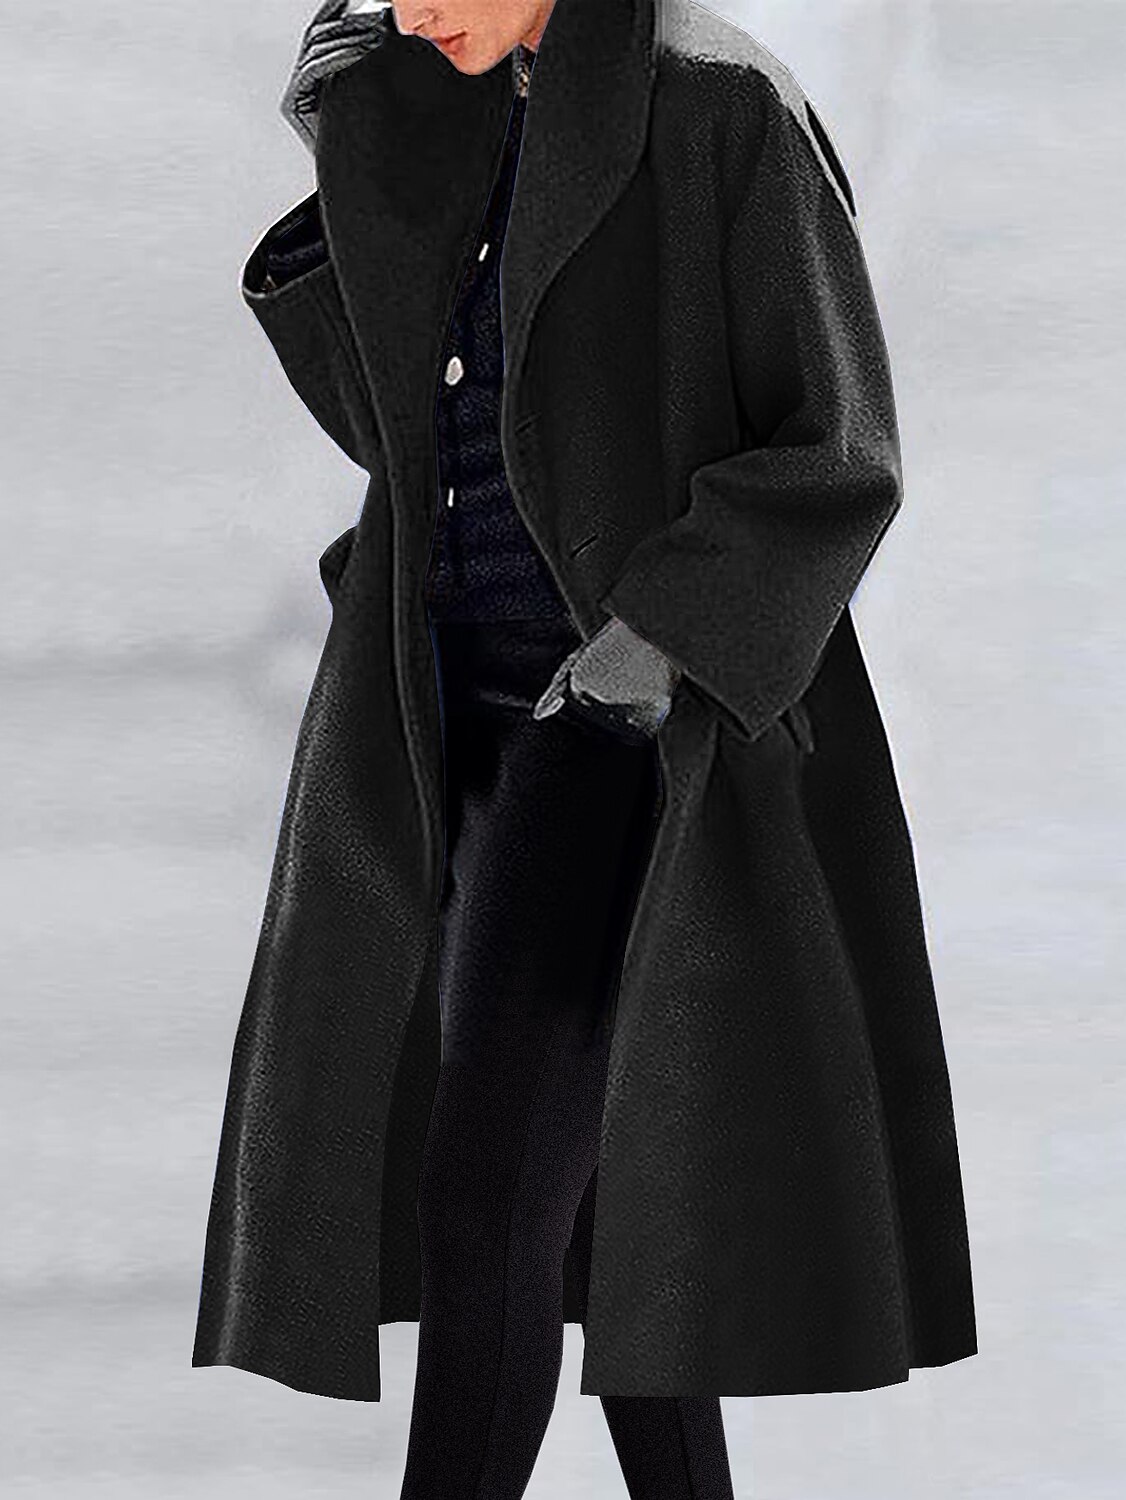 Shepicker Women's Winter Long Overcoat